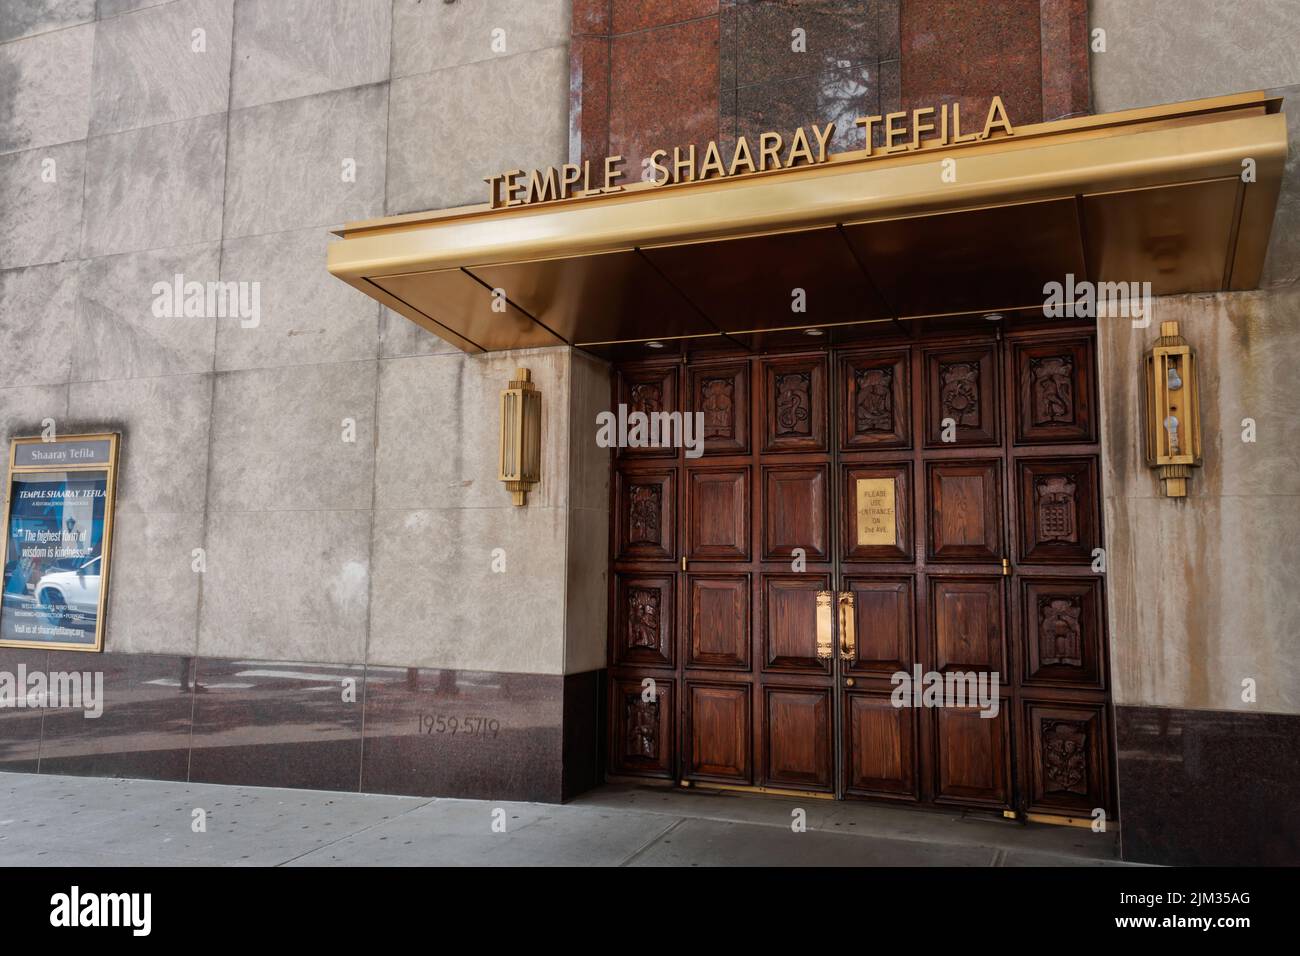 71st entrada a la calle Temple Shaaray Tefila en el Upper East Side de Manhattan, Nueva York, una Congregación Judía de Reforma Foto de stock